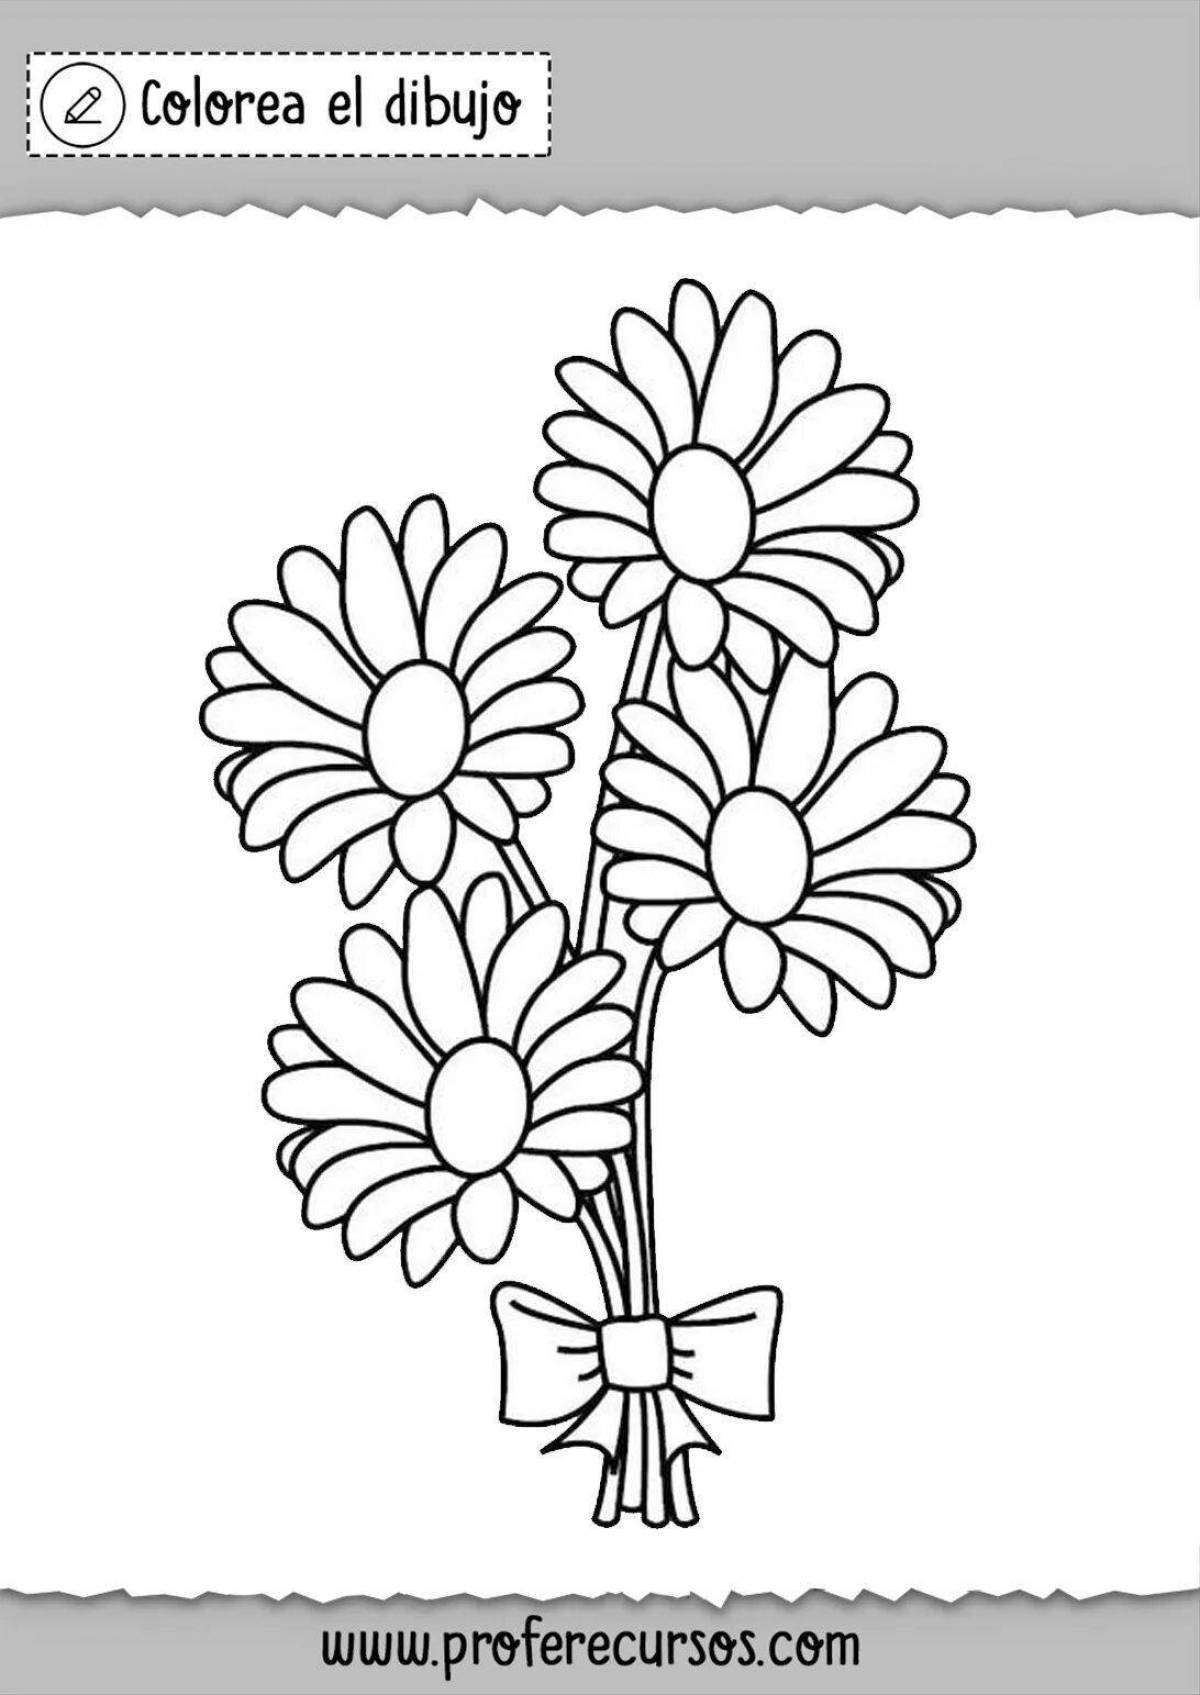 Великолепный цветок ромашки раскраски для дошкольников